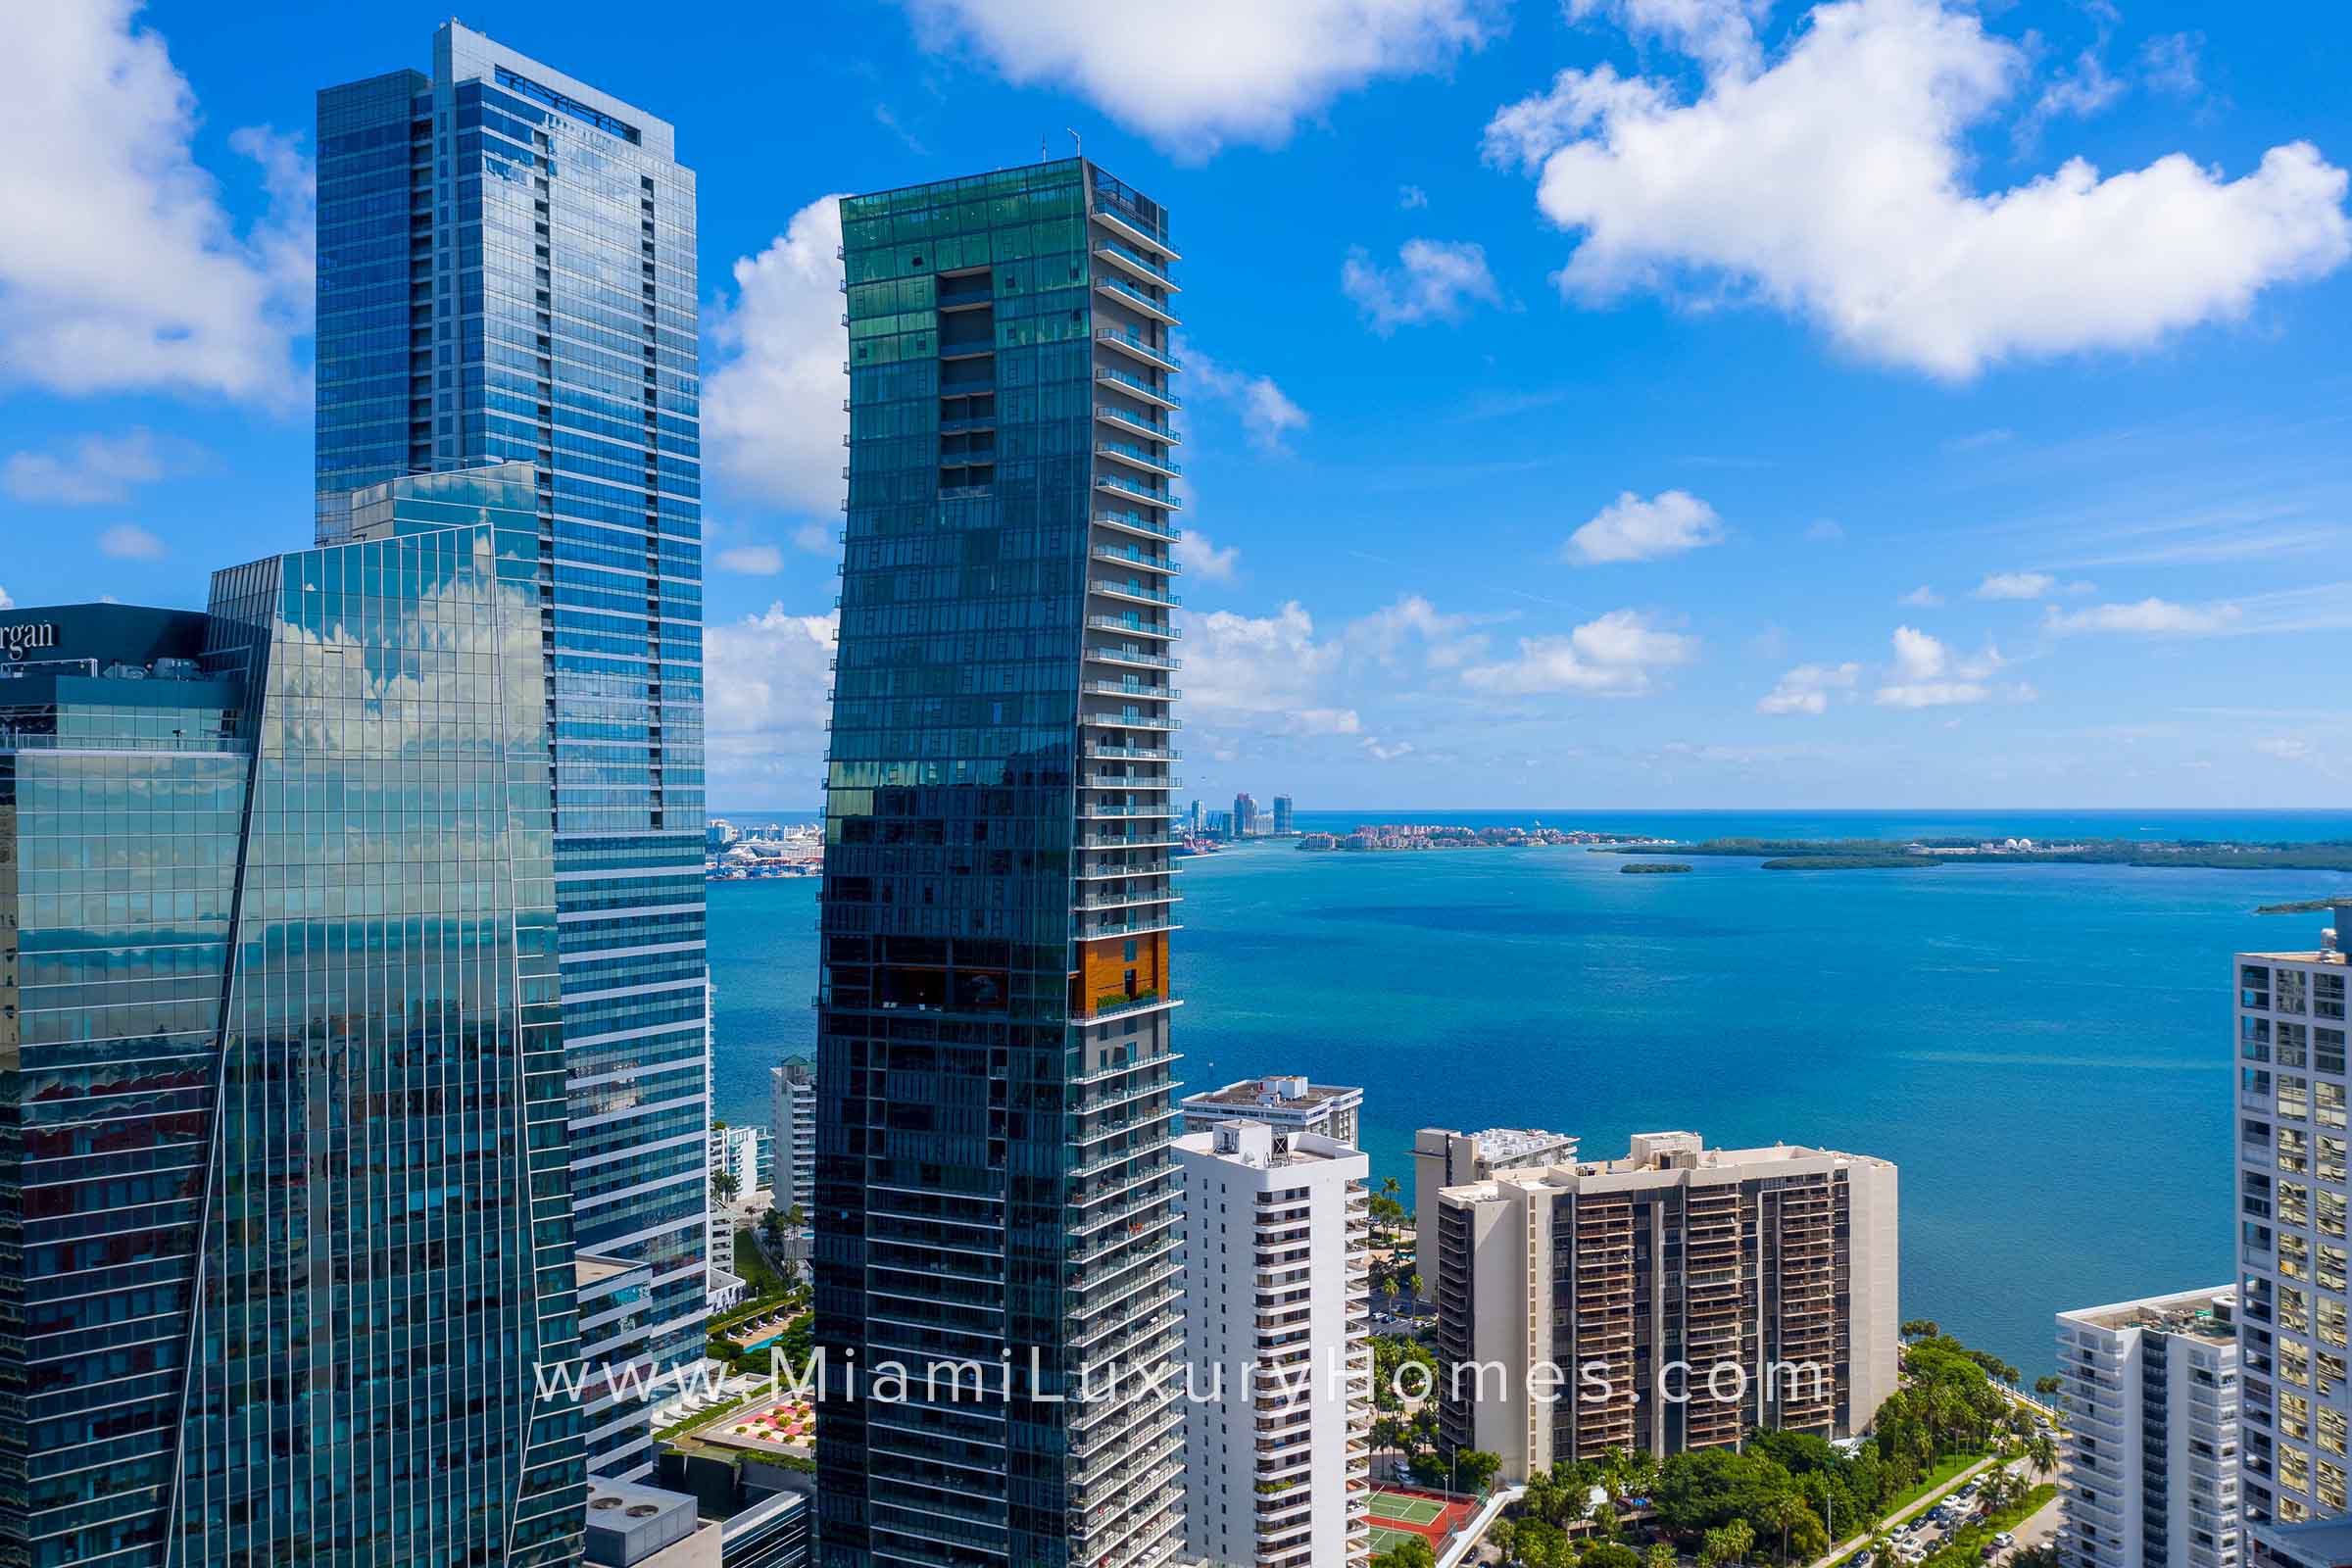 Echo Brickell Condos in Miami